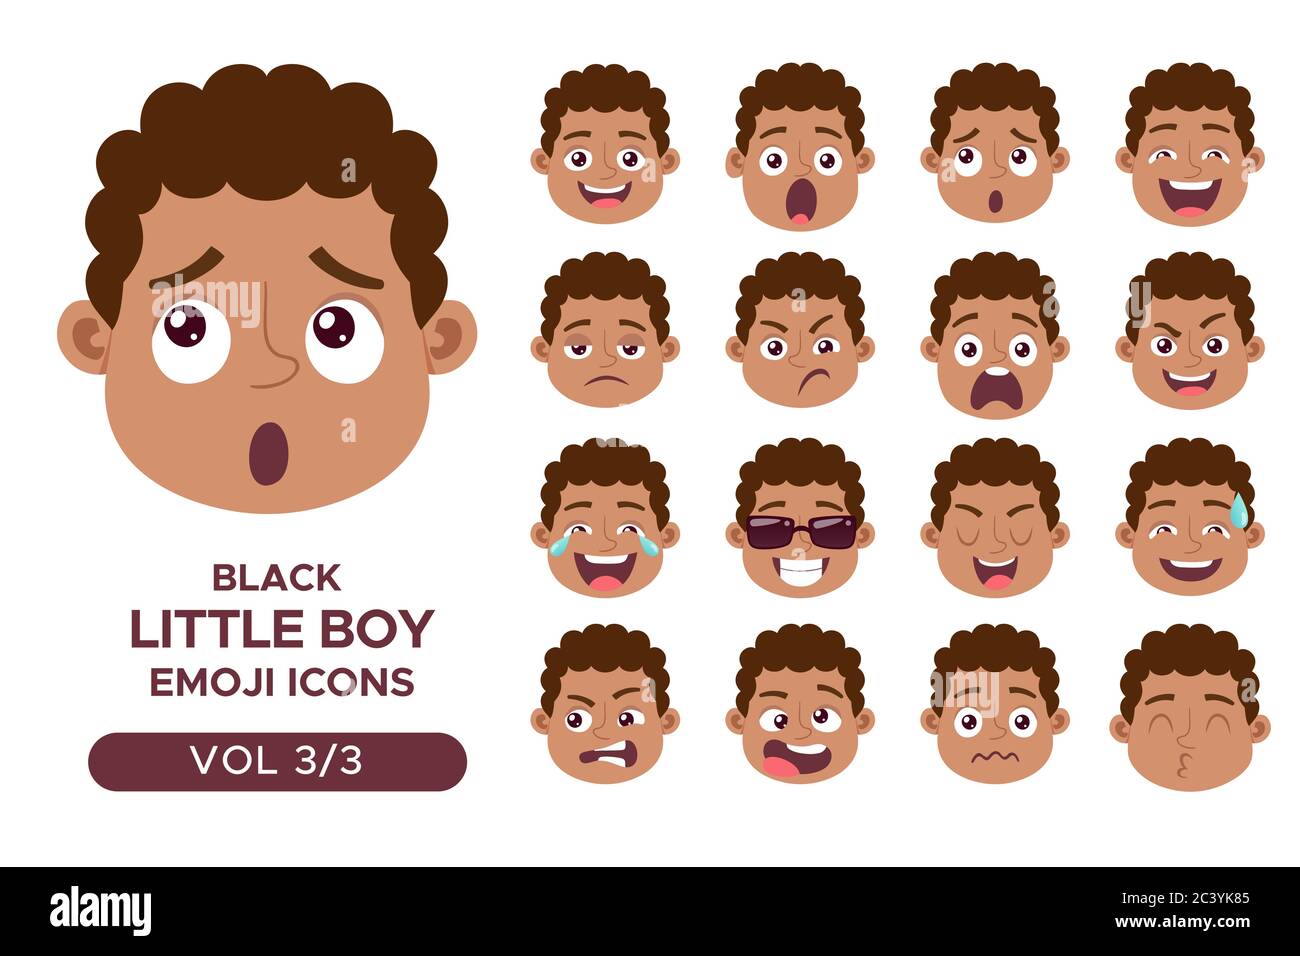 Ensemble d'avatar pour le visage d'un garçon. Personnage emoji petit garçon noir avec différentes expressions. Illustration vectorielle en style dessin animé. Jeu 3 sur 3. Illustration de Vecteur